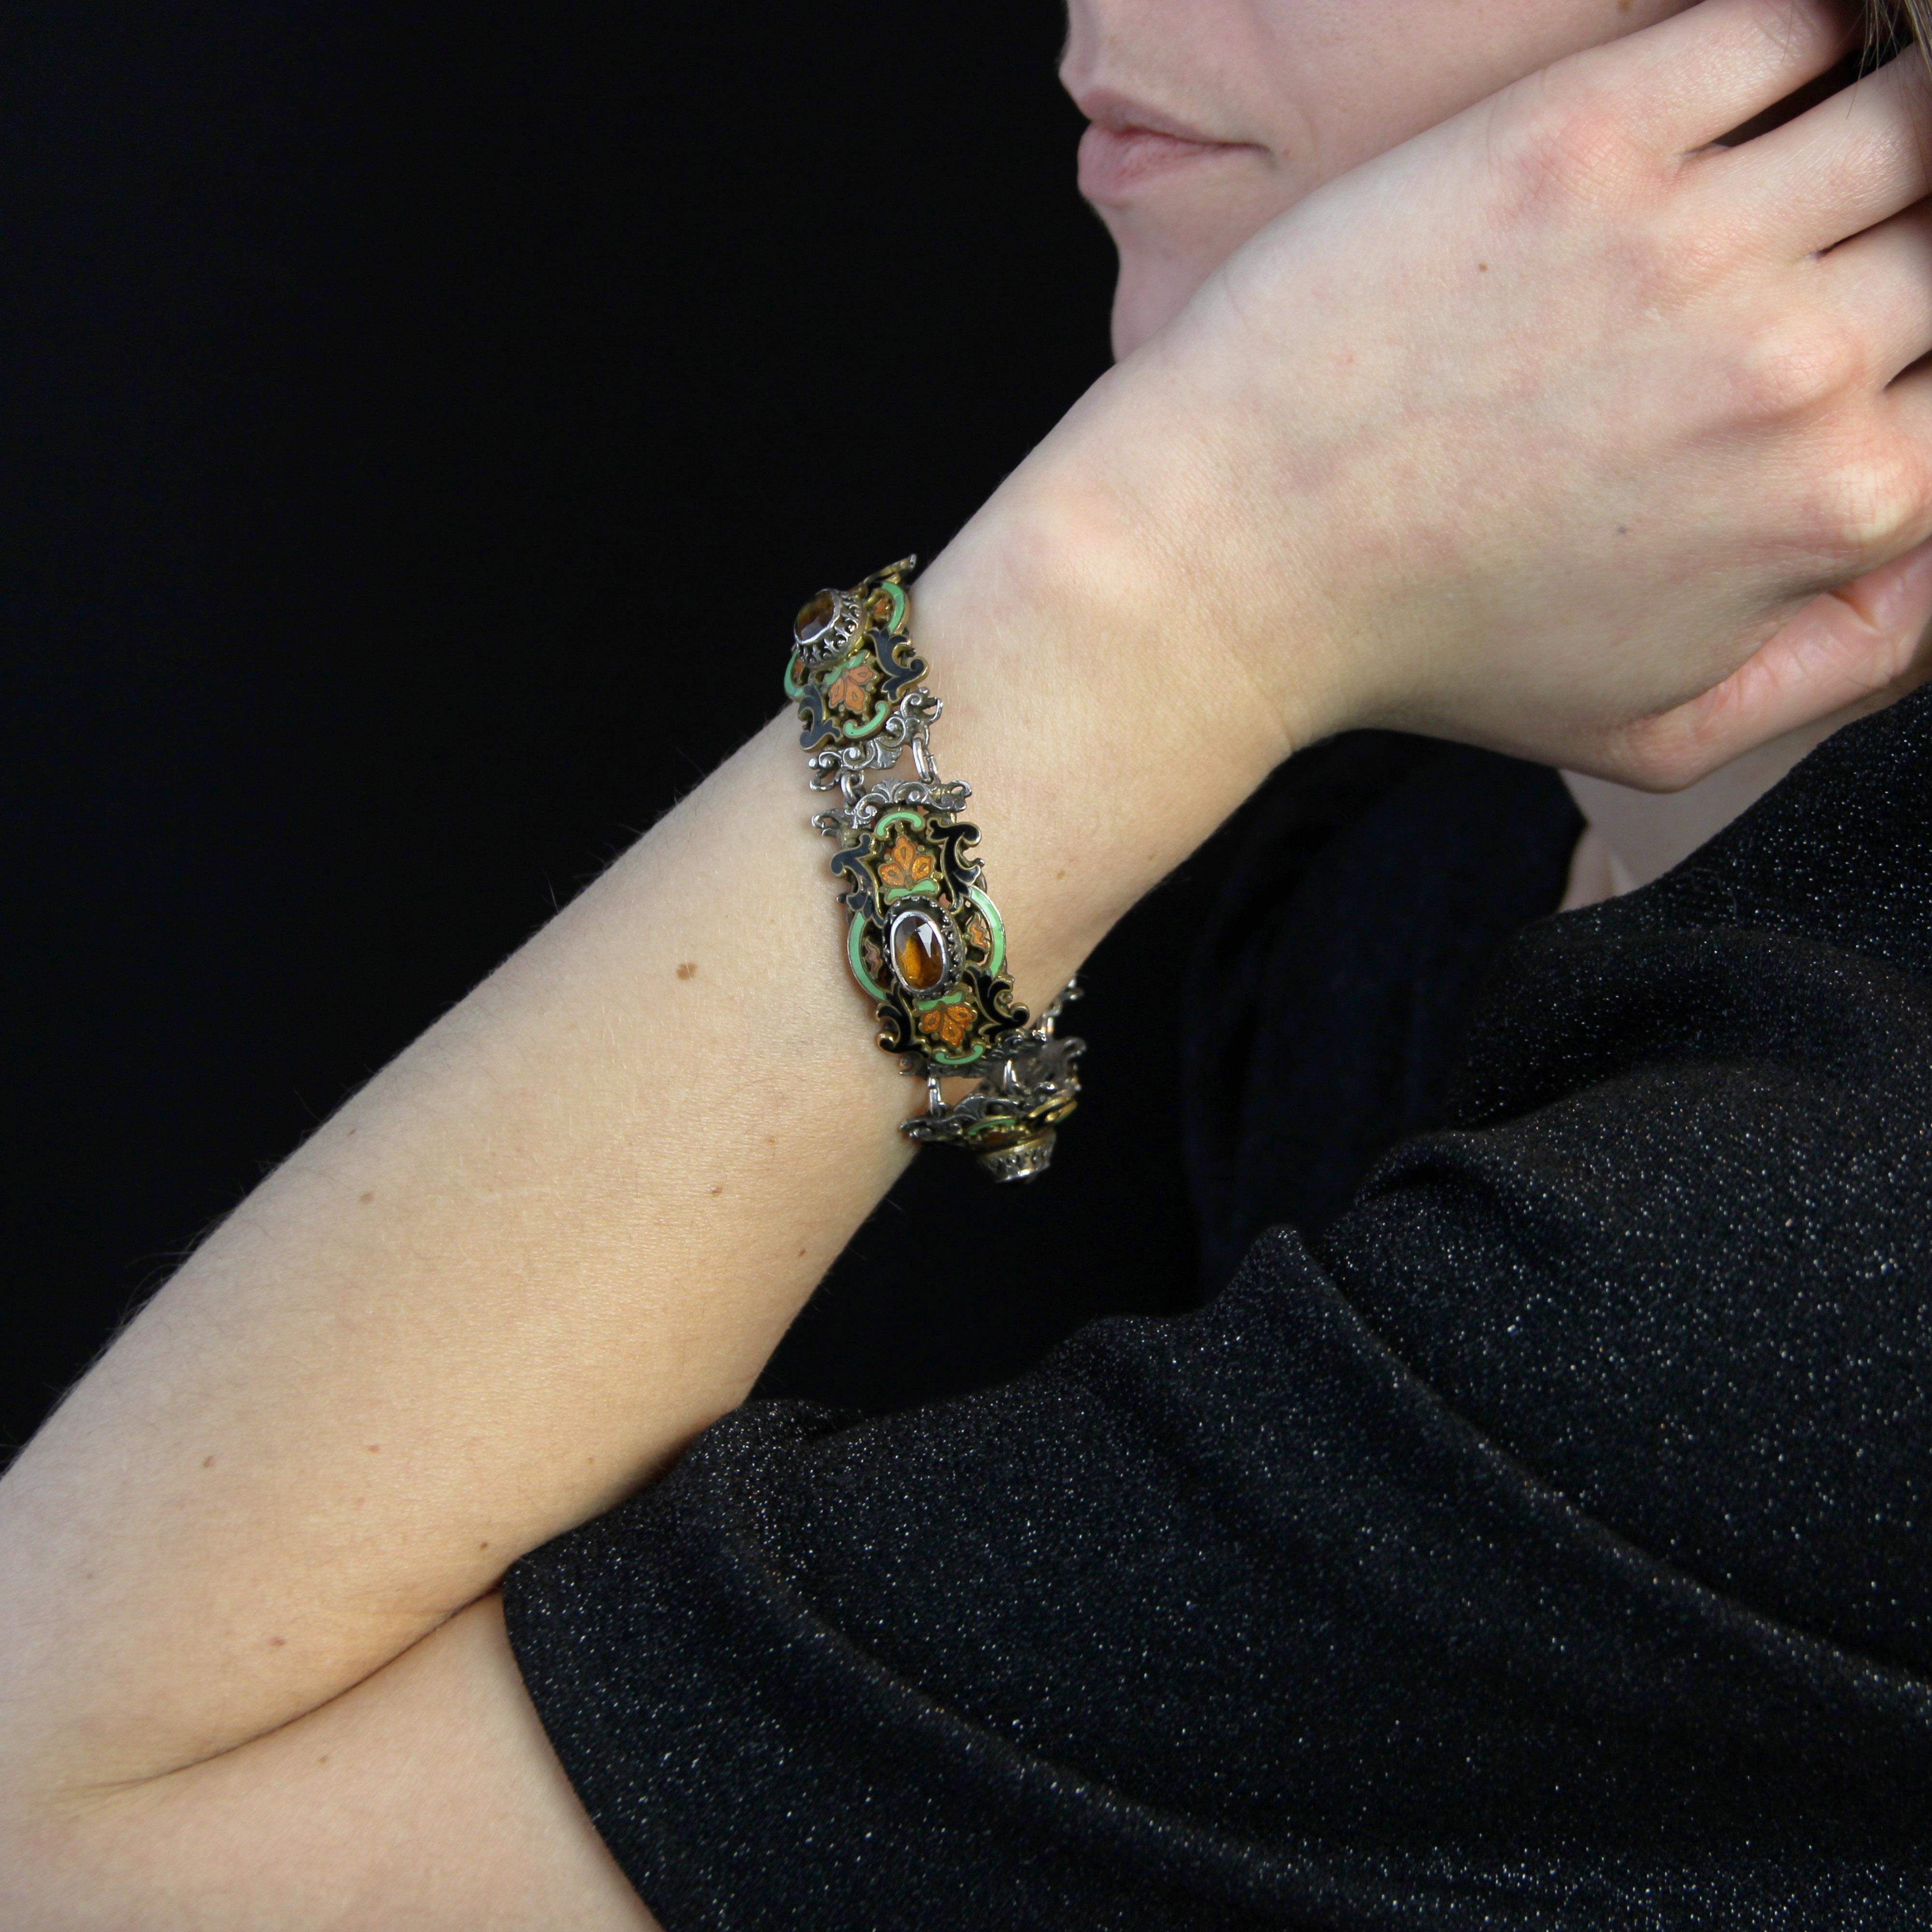 Bracelet en argent, poinçon tête de bélier.
Ce bracelet ancien présente 4 motifs rectangulaires séparés par des anneaux. Chaque motif est incurvé, percé d'arabesques et gravé de motifs végétaux. Une plaque en émail noir, vert et orange est également